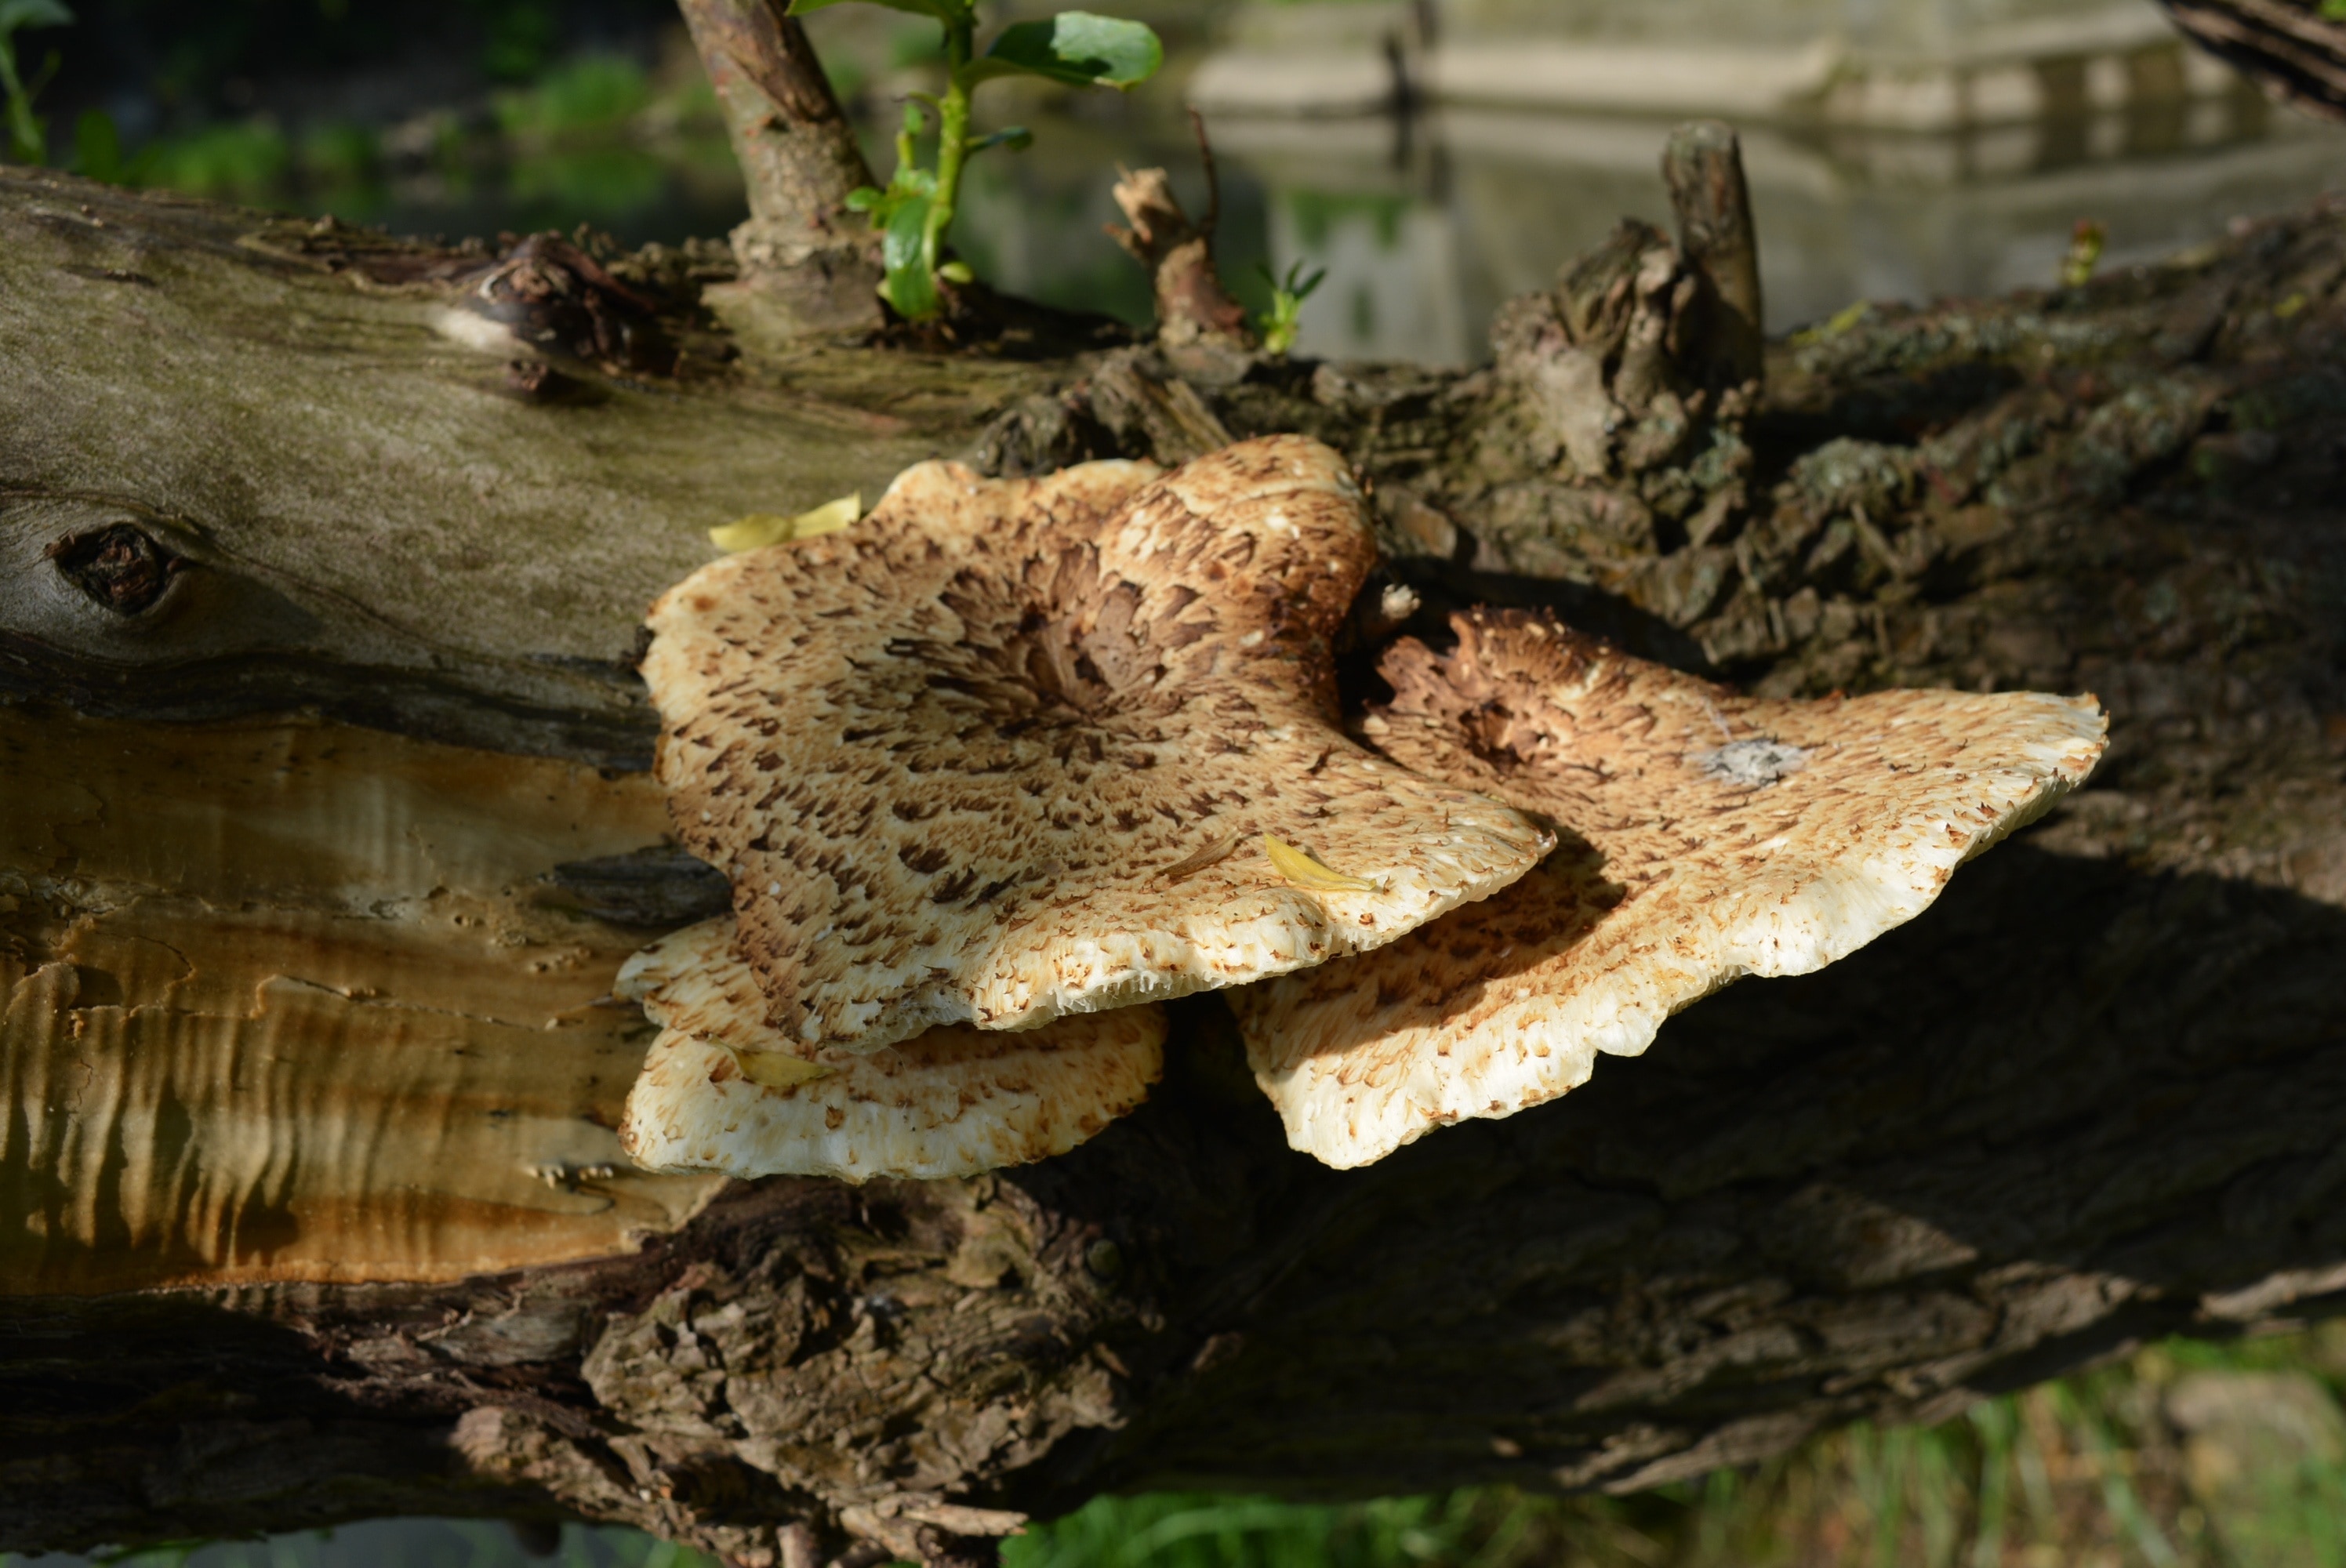 Tree Fungus, Mushroom, Mushrooms On Tree, one animal, animal themes